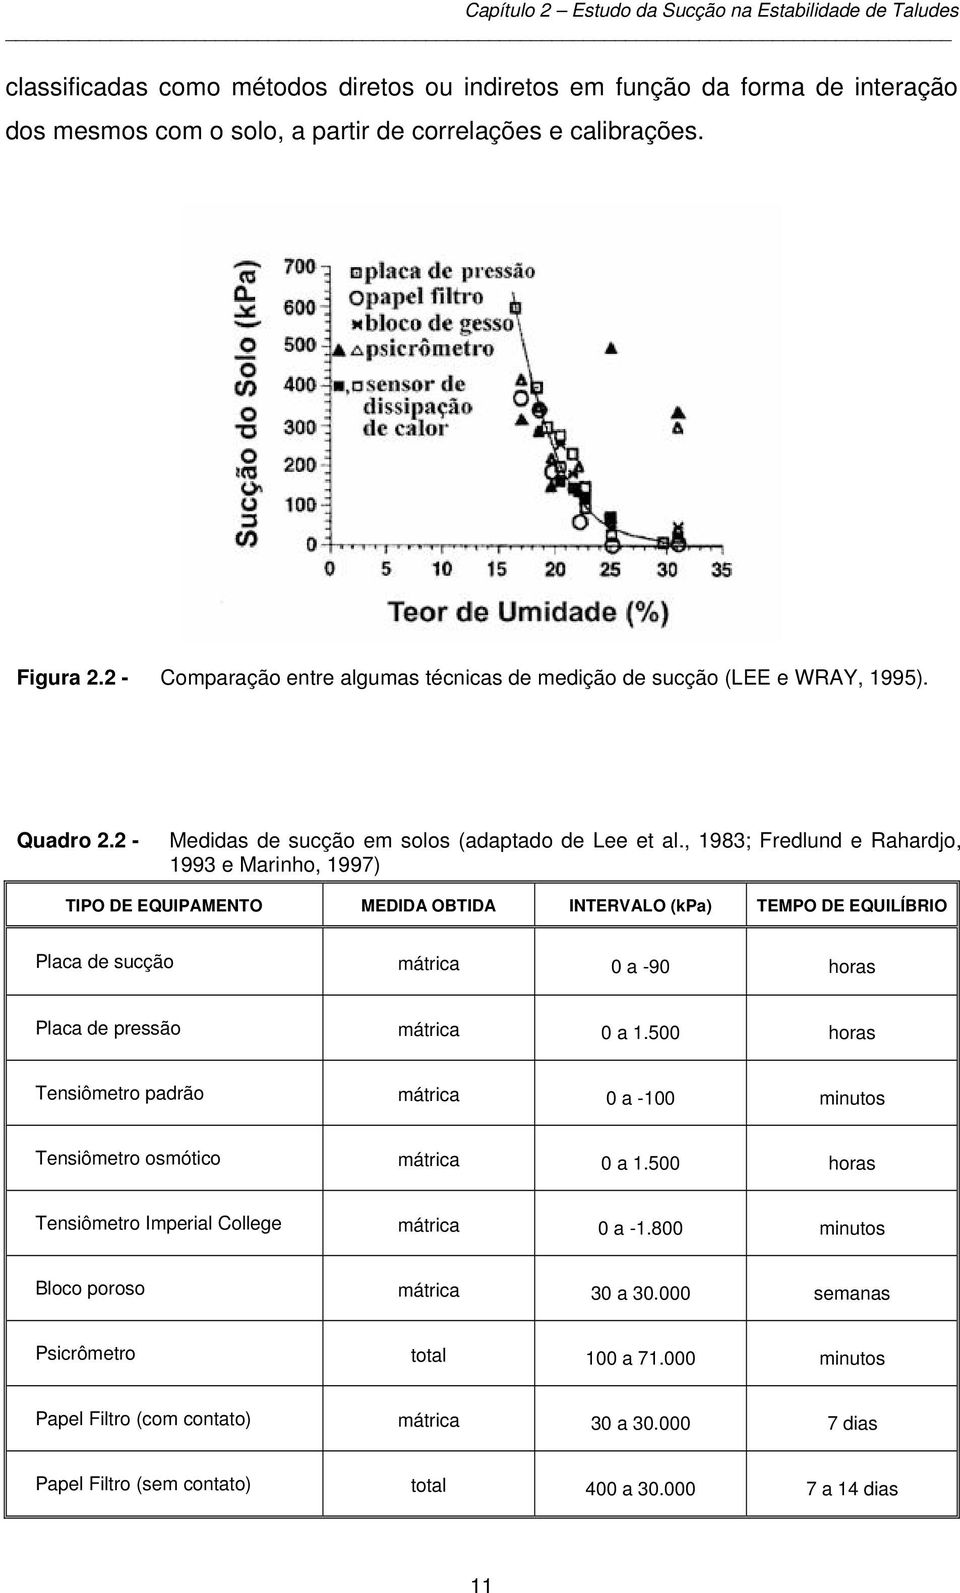 , 1983; Fredlund e Rahardjo, 1993 e Marinho, 1997) TIPO DE EQUIPAMENTO MEDIDA OBTIDA INTERVALO (kpa) TEMPO DE EQUILÍBRIO Placa de sucção mátrica 0 a -90 horas Placa de pressão mátrica 0 a 1.